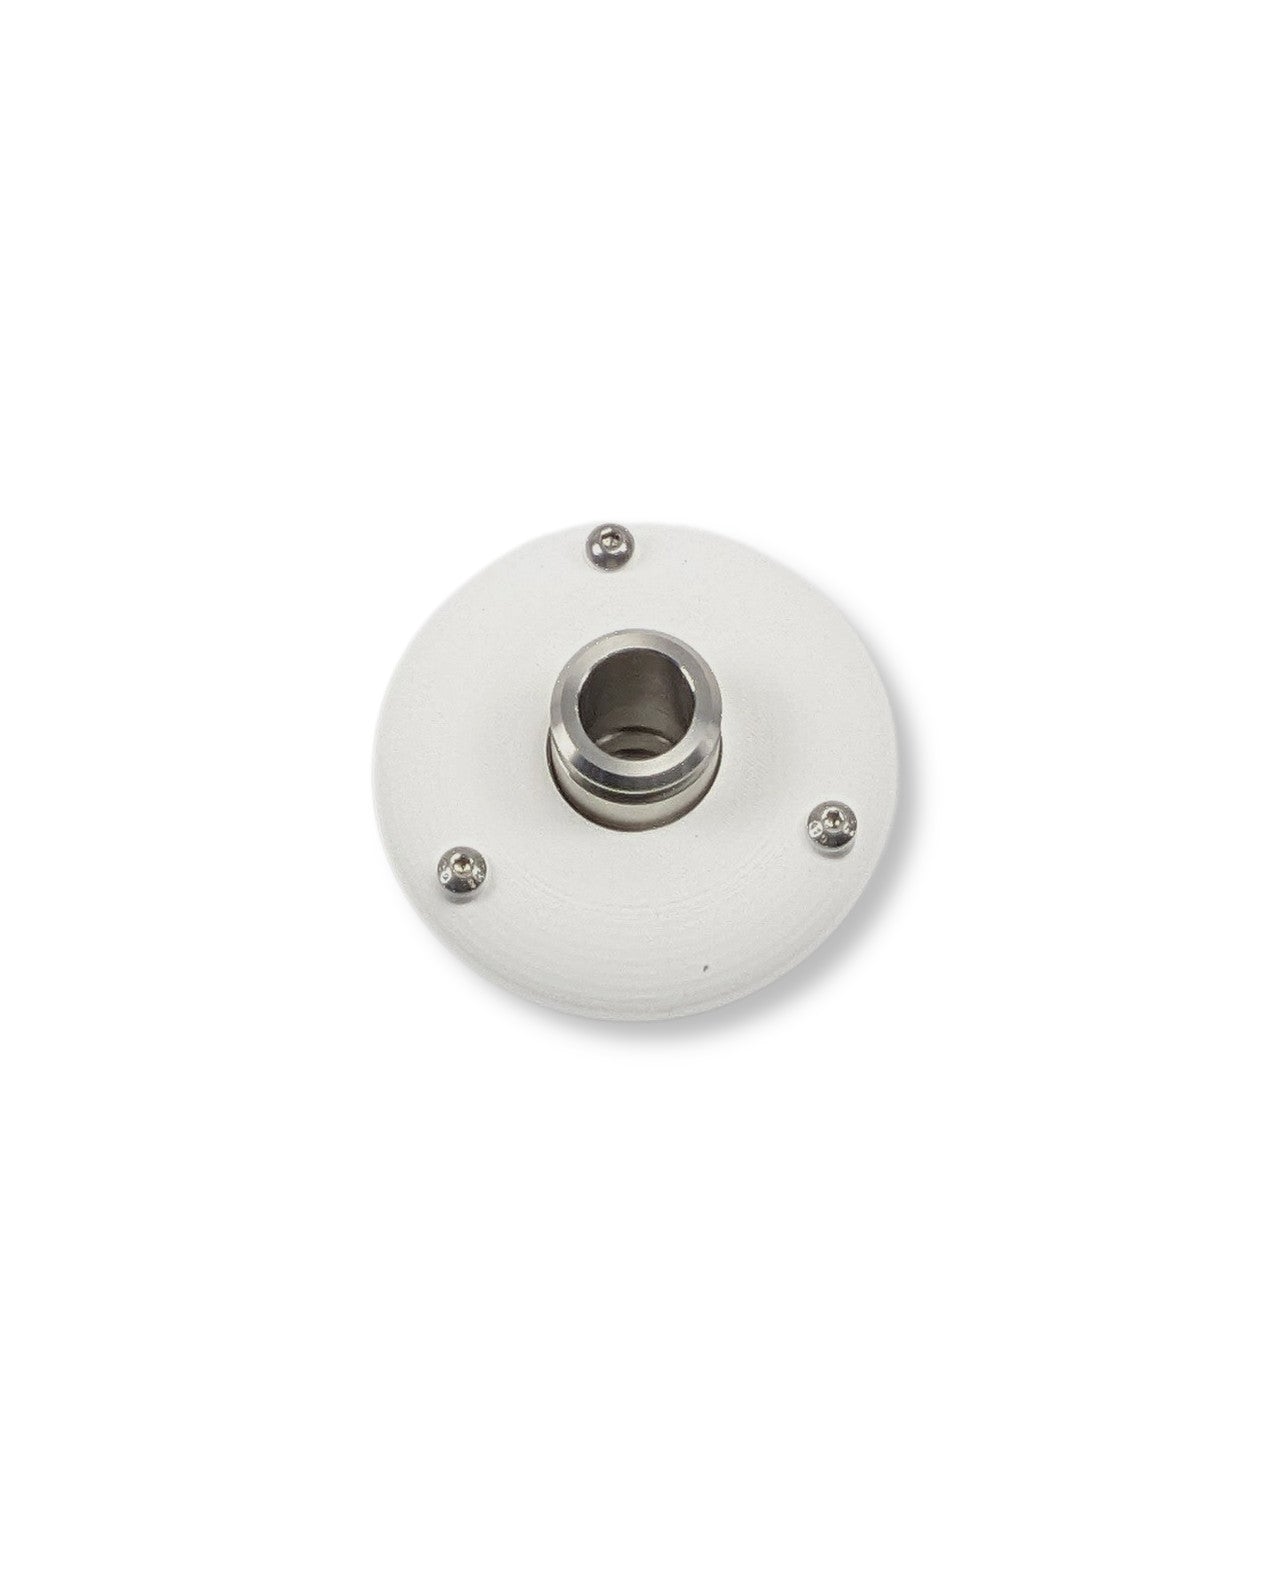 Ein weißer runder Knopf auf einer weißen Oberfläche kennzeichnet das PURION IBC Universal 48W OTC SPL BS Tank-Set, das von der UV Concept GmbH entwickelt wurde, um Verkeimungen durch eine effiziente Wasserentnahme zu verhindern.